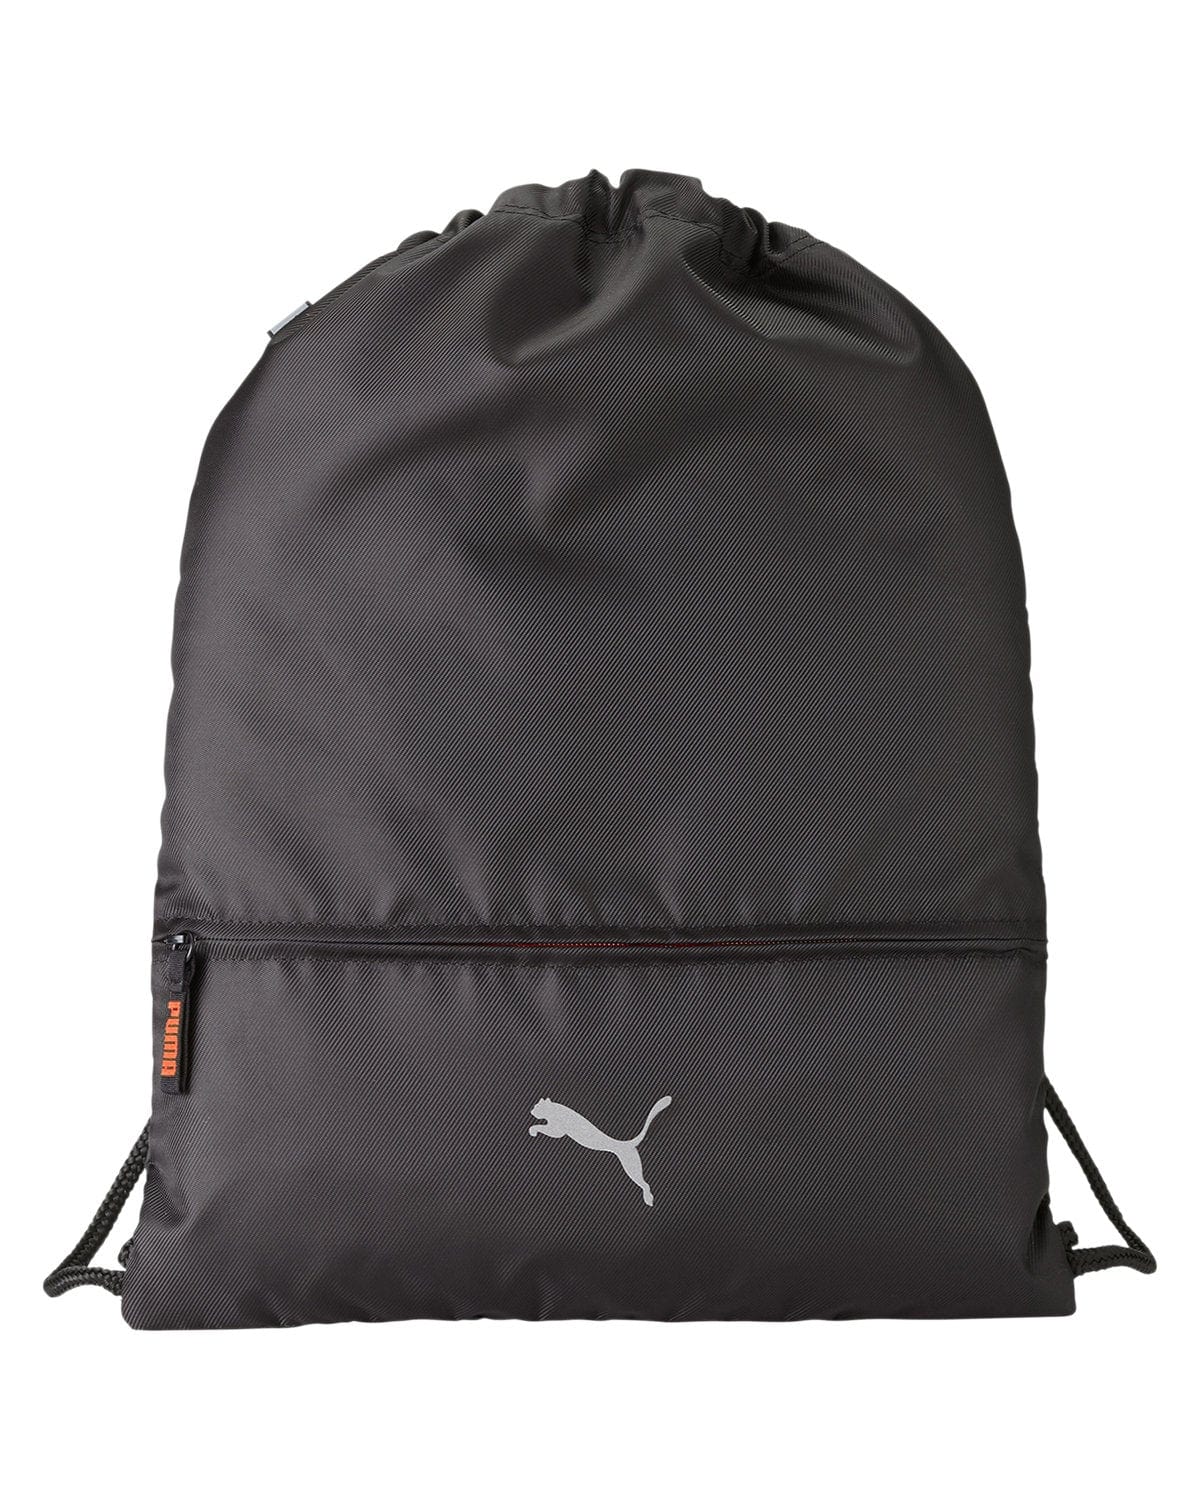 Puma Golf Bags One Size / Puma Black Puma - Lightweight Carry Sack